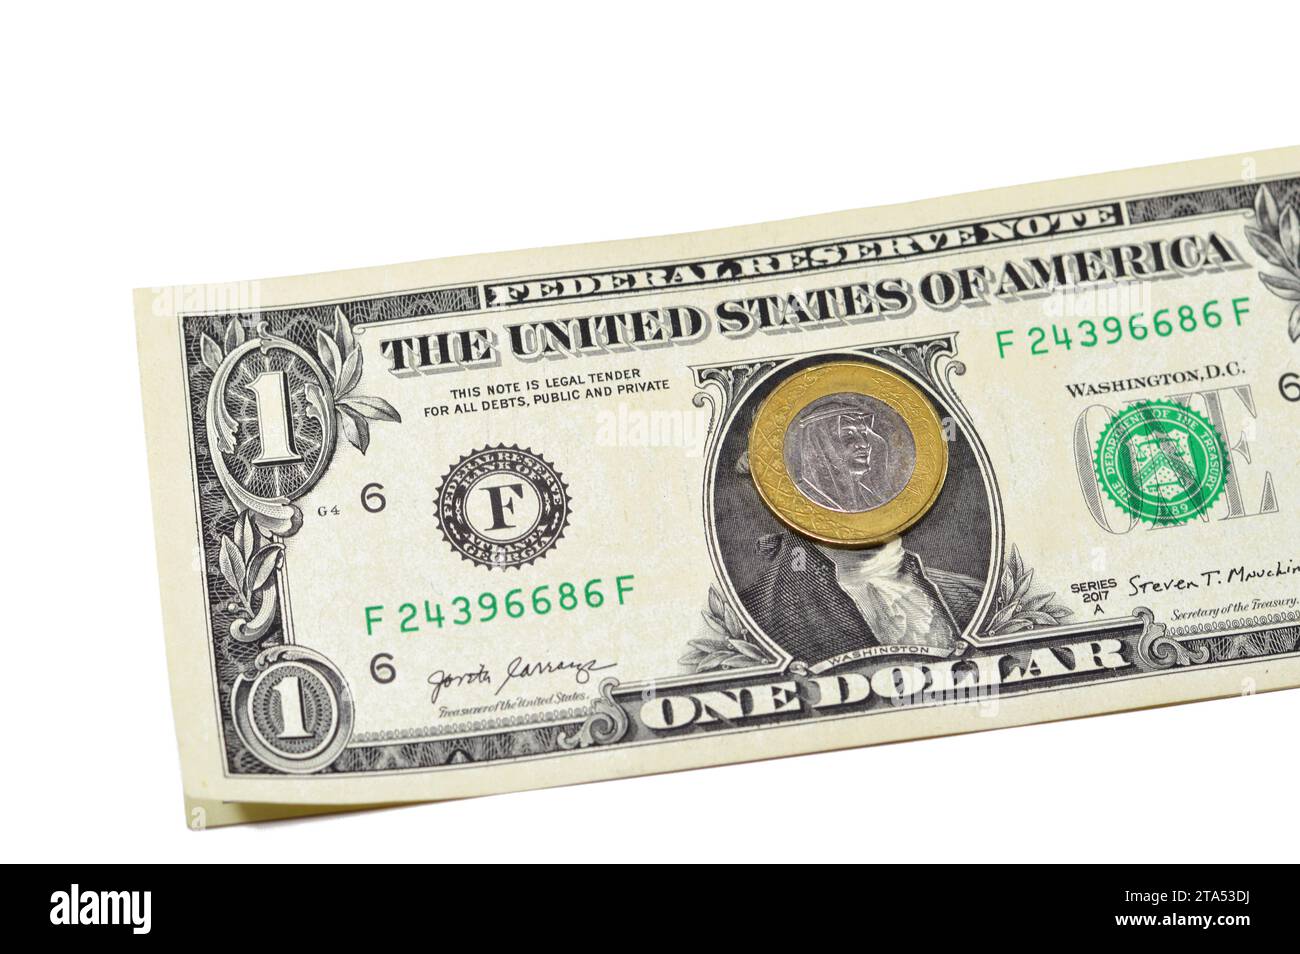 Une pièce de monnaie de riyal d'Arabie saoudite année 2016 sur fond de billet de papier de 1 dollar américain USD, un métal SAR et un billet de banque USD argent saoudien et américain, 1 S. Banque D'Images